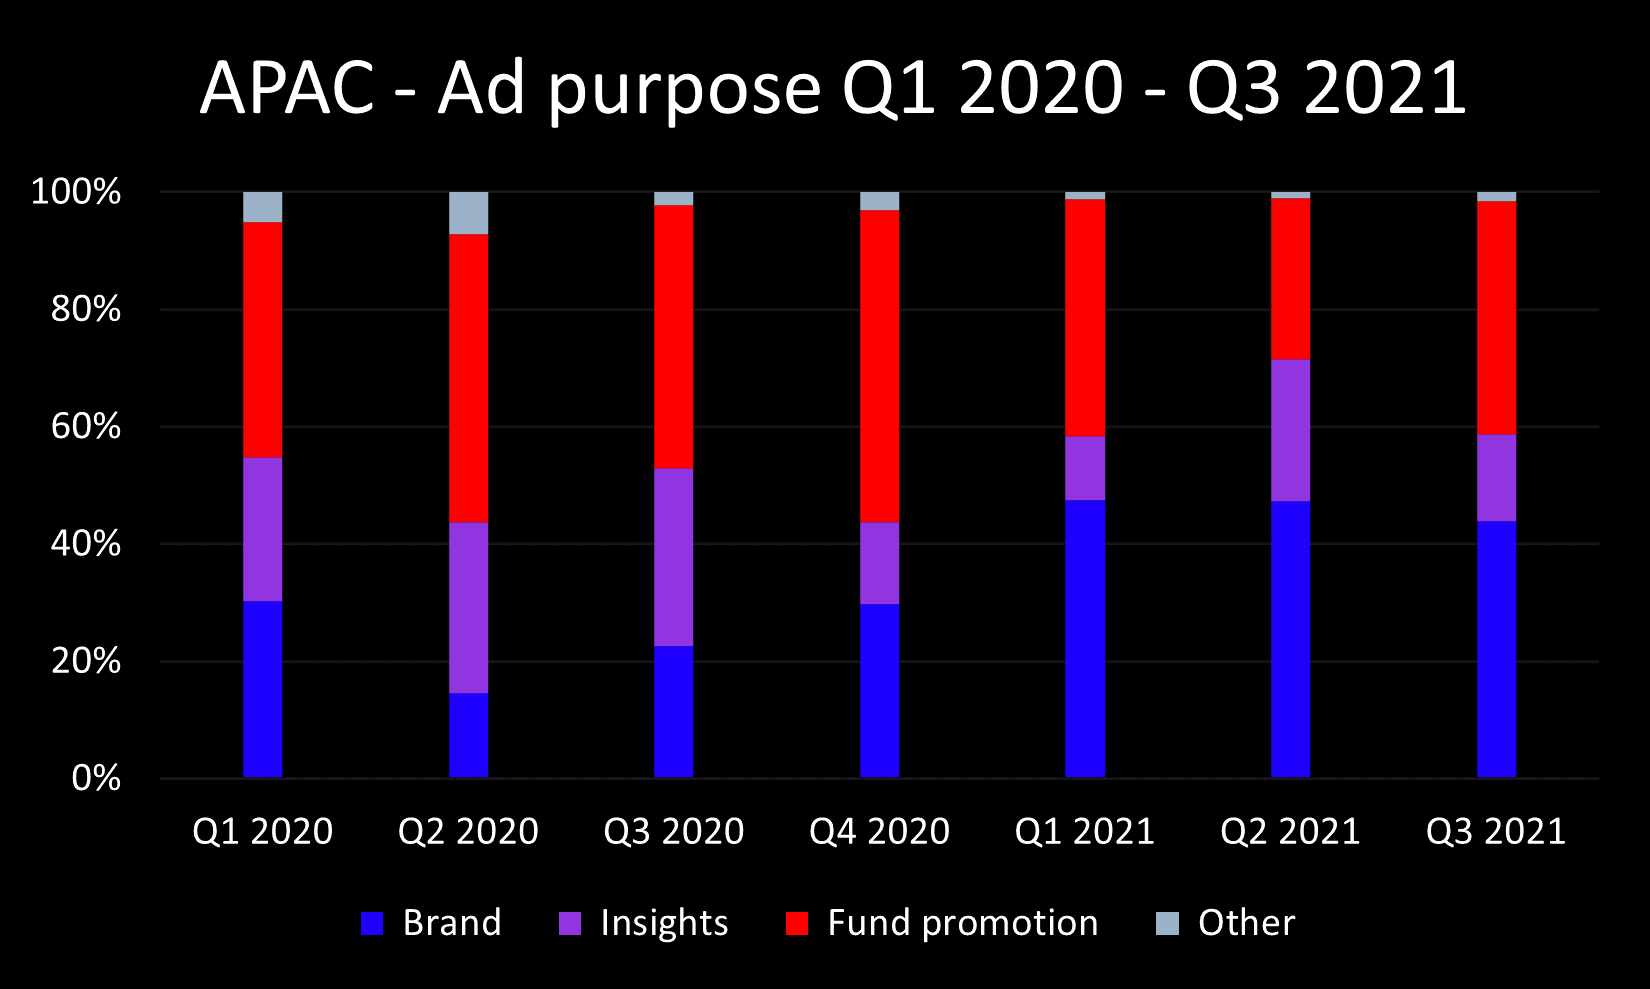 Q3 2021 APAC ad purpose